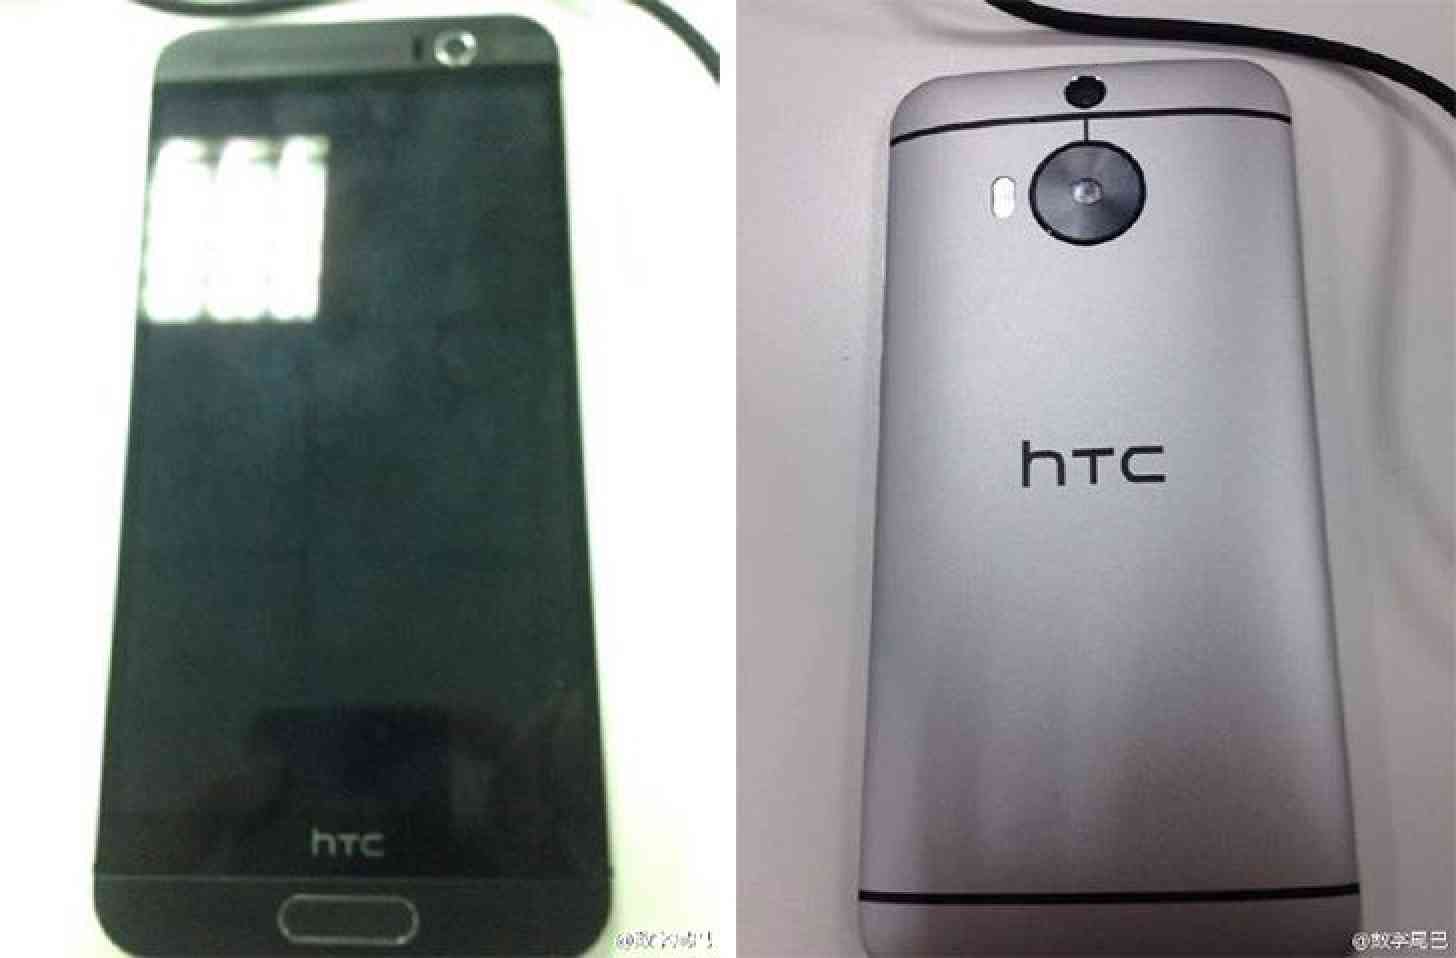 HTC One (M9) Plus images leak